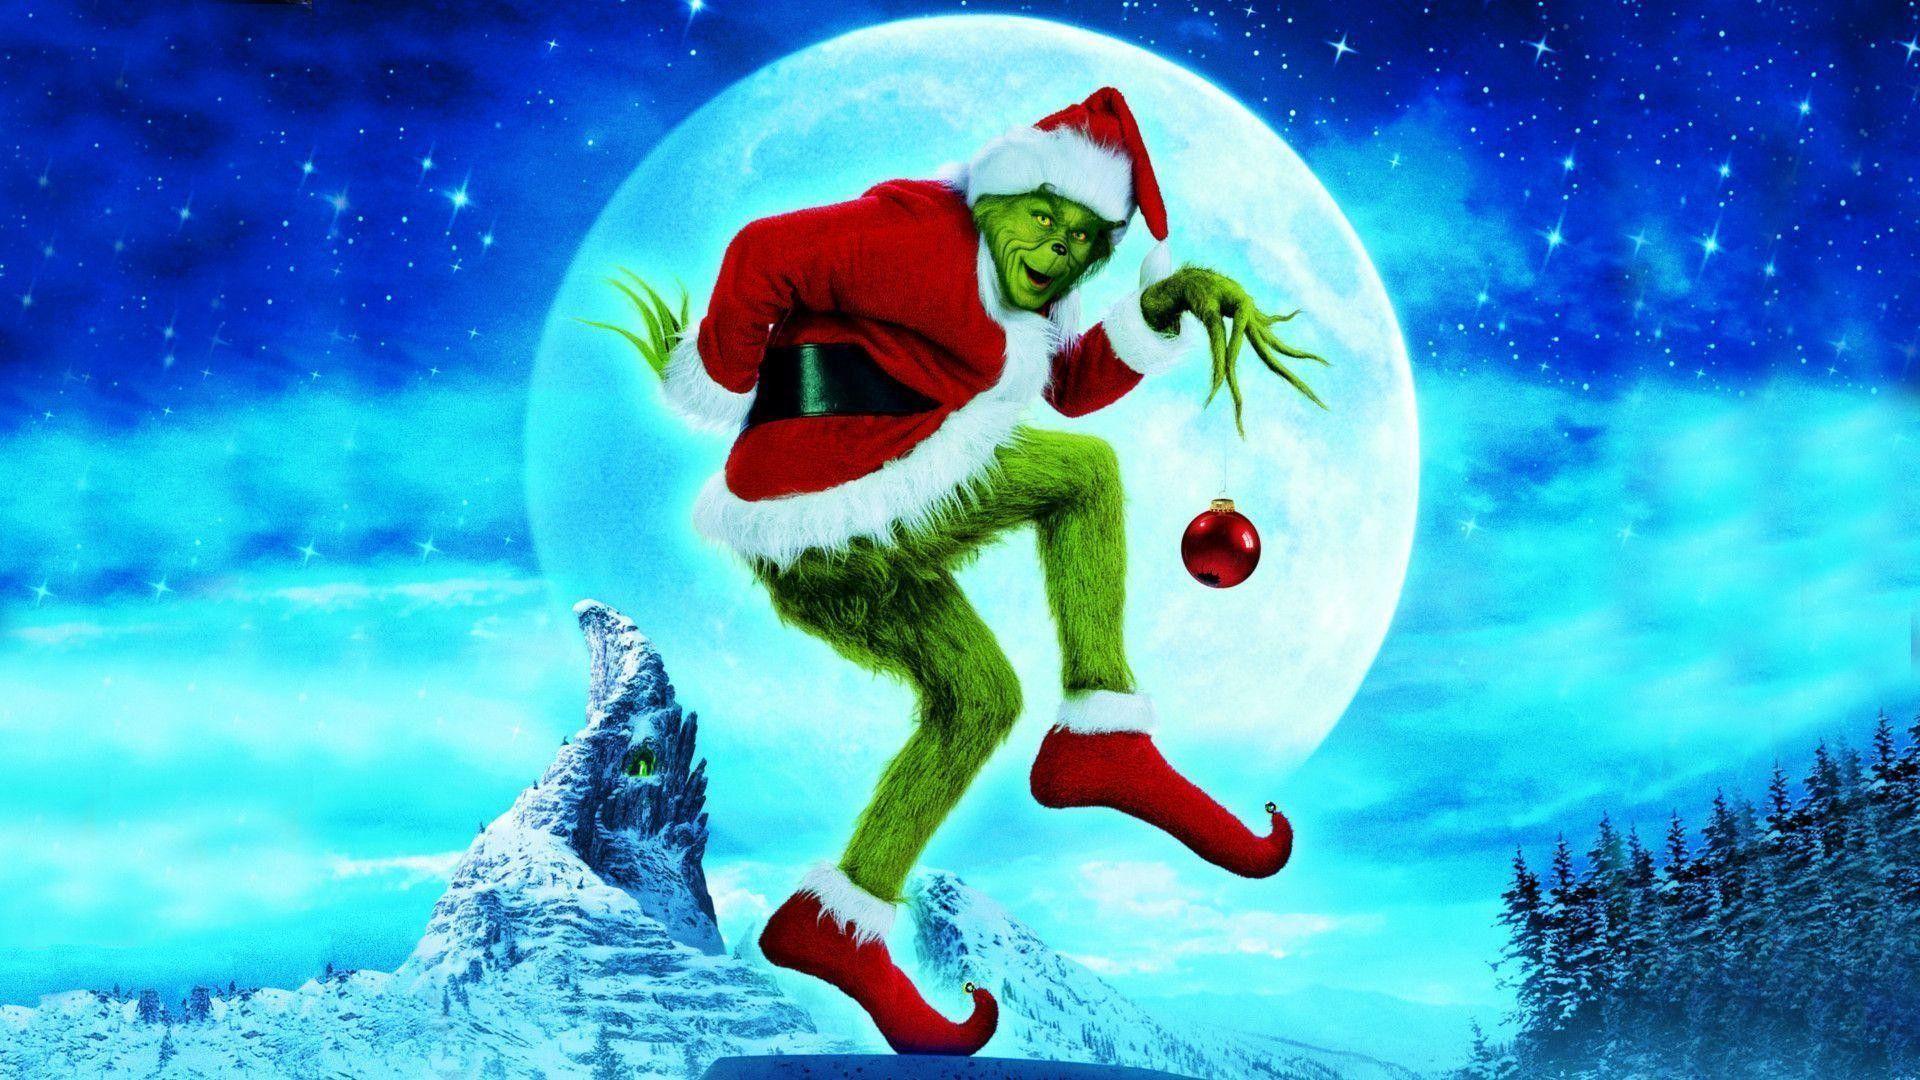 Tết đến rồi, bạn có sẵn sàng để thể hiện tình yêu đến với các nhân vật Grinch trong ngày lễ Giáng sinh? Hãy cập nhật ngay hình nền Grinch Giáng sinh miễn phí hàng đầu để đón mừng mùa Noel. Hãy tải ngay để thưởng thức!